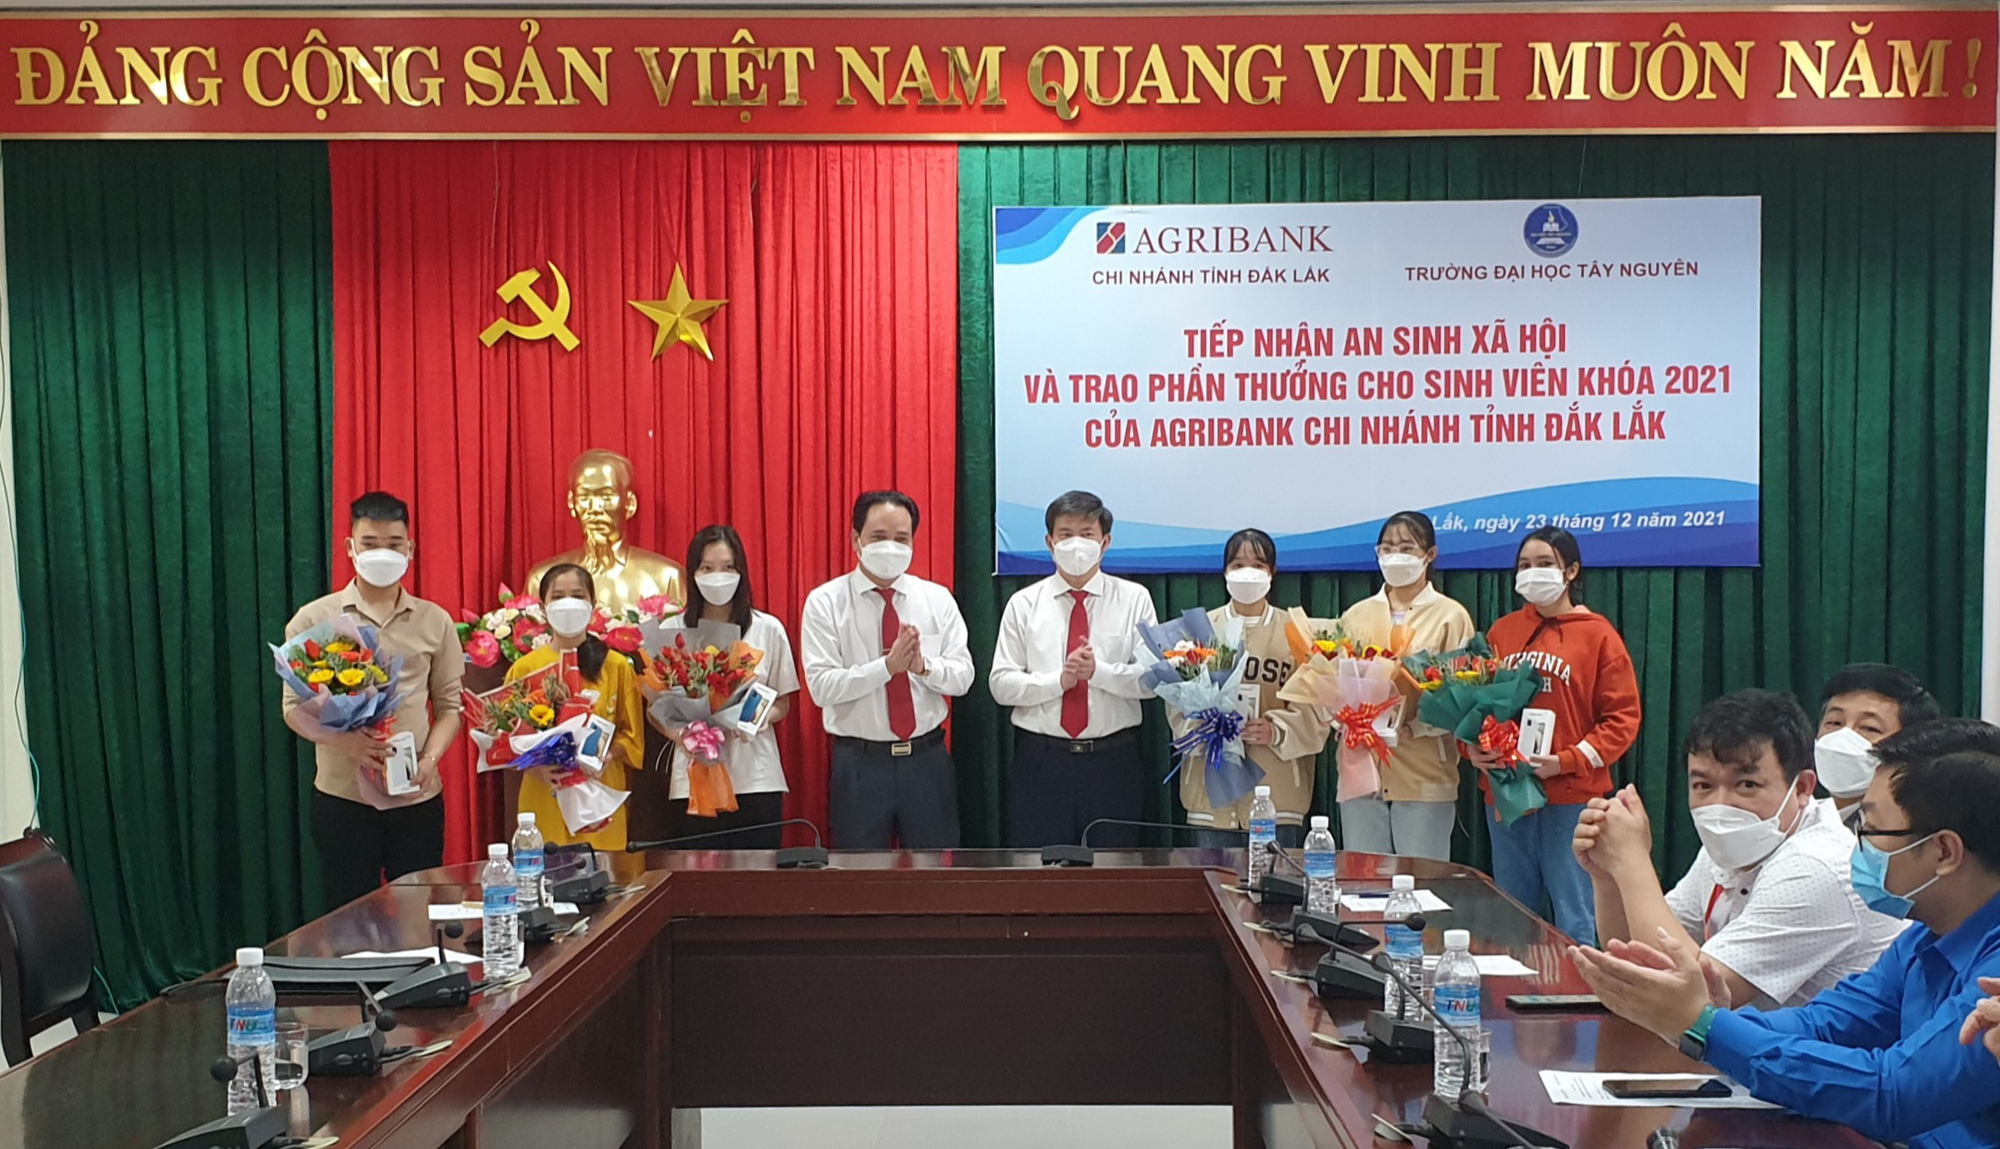 Agribank tỉnh Đắk Lắk: Tài trợ 300 triệu đồng và trao thưởng cho sinh viên cho Trường Đại học Tây Nguyên - Ảnh 2.